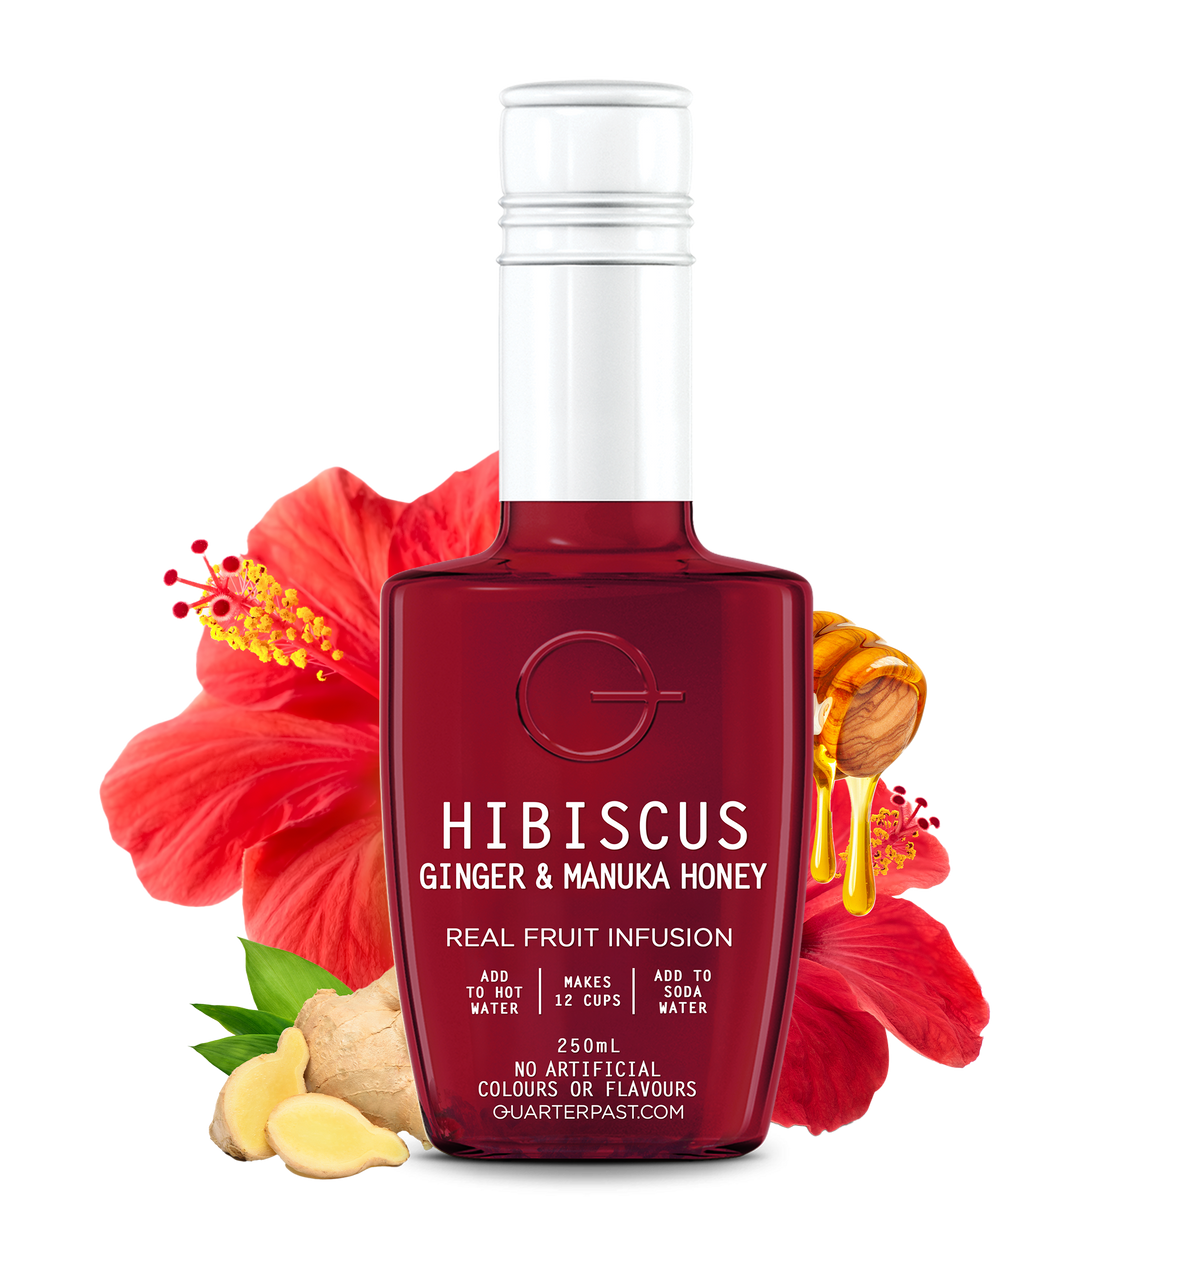 Hibiscus Ginger & Manuka Honey Fruit Infusion